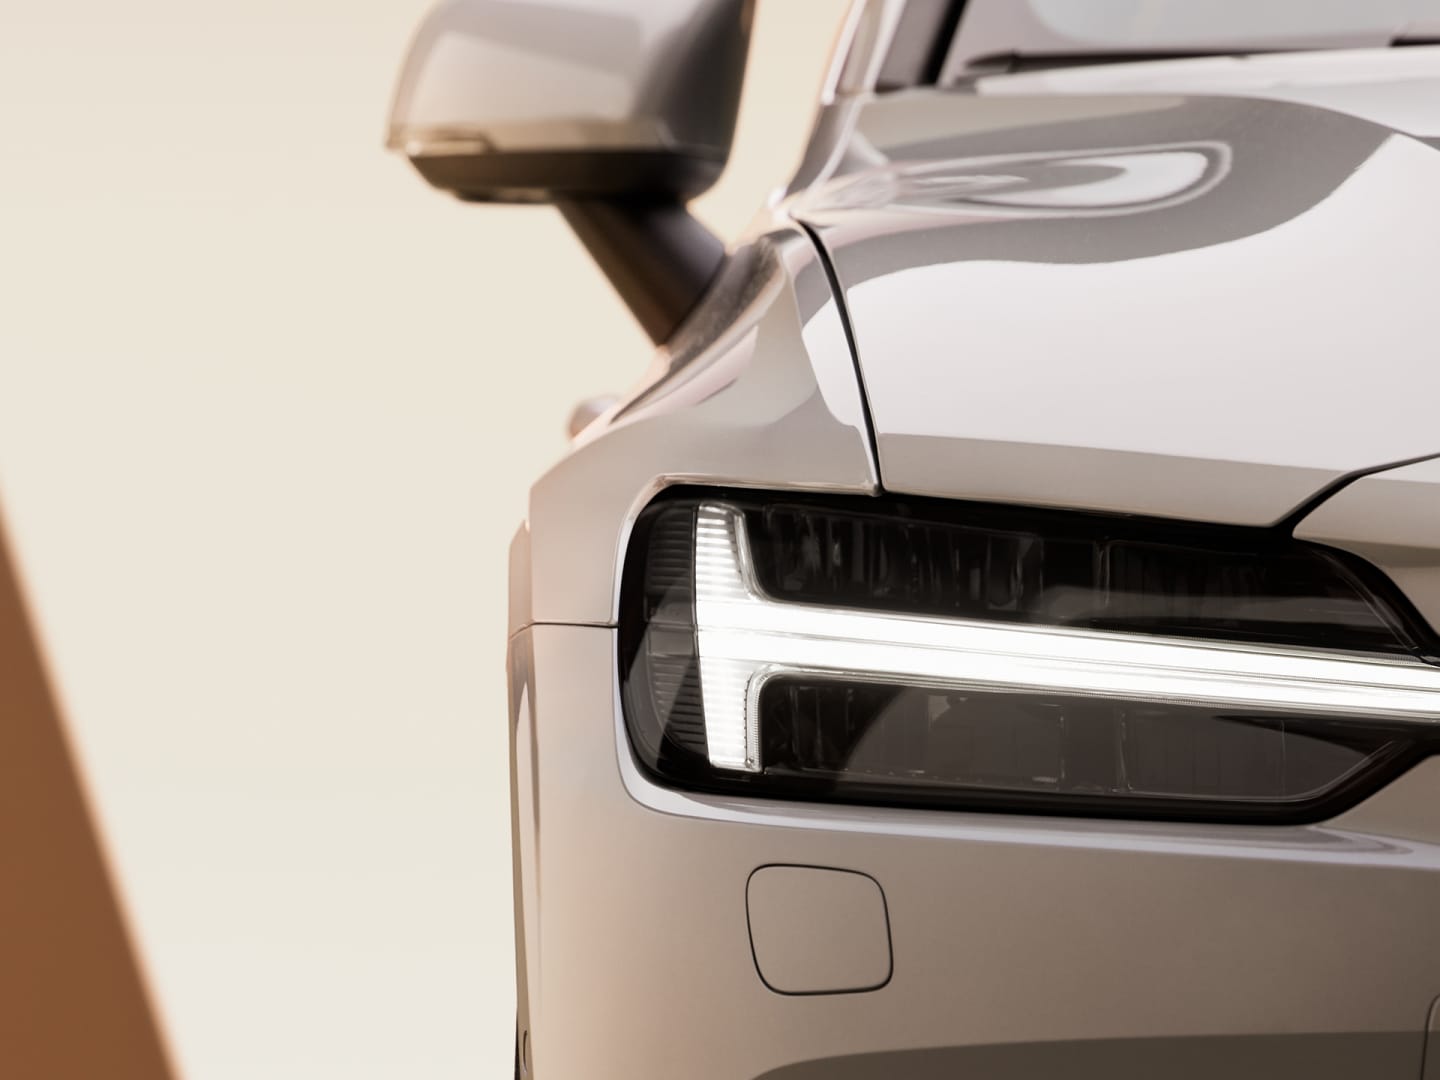 LED světlomety plug-in hybridního vozu Volvo V60 přispívající k lepší viditelnosti.